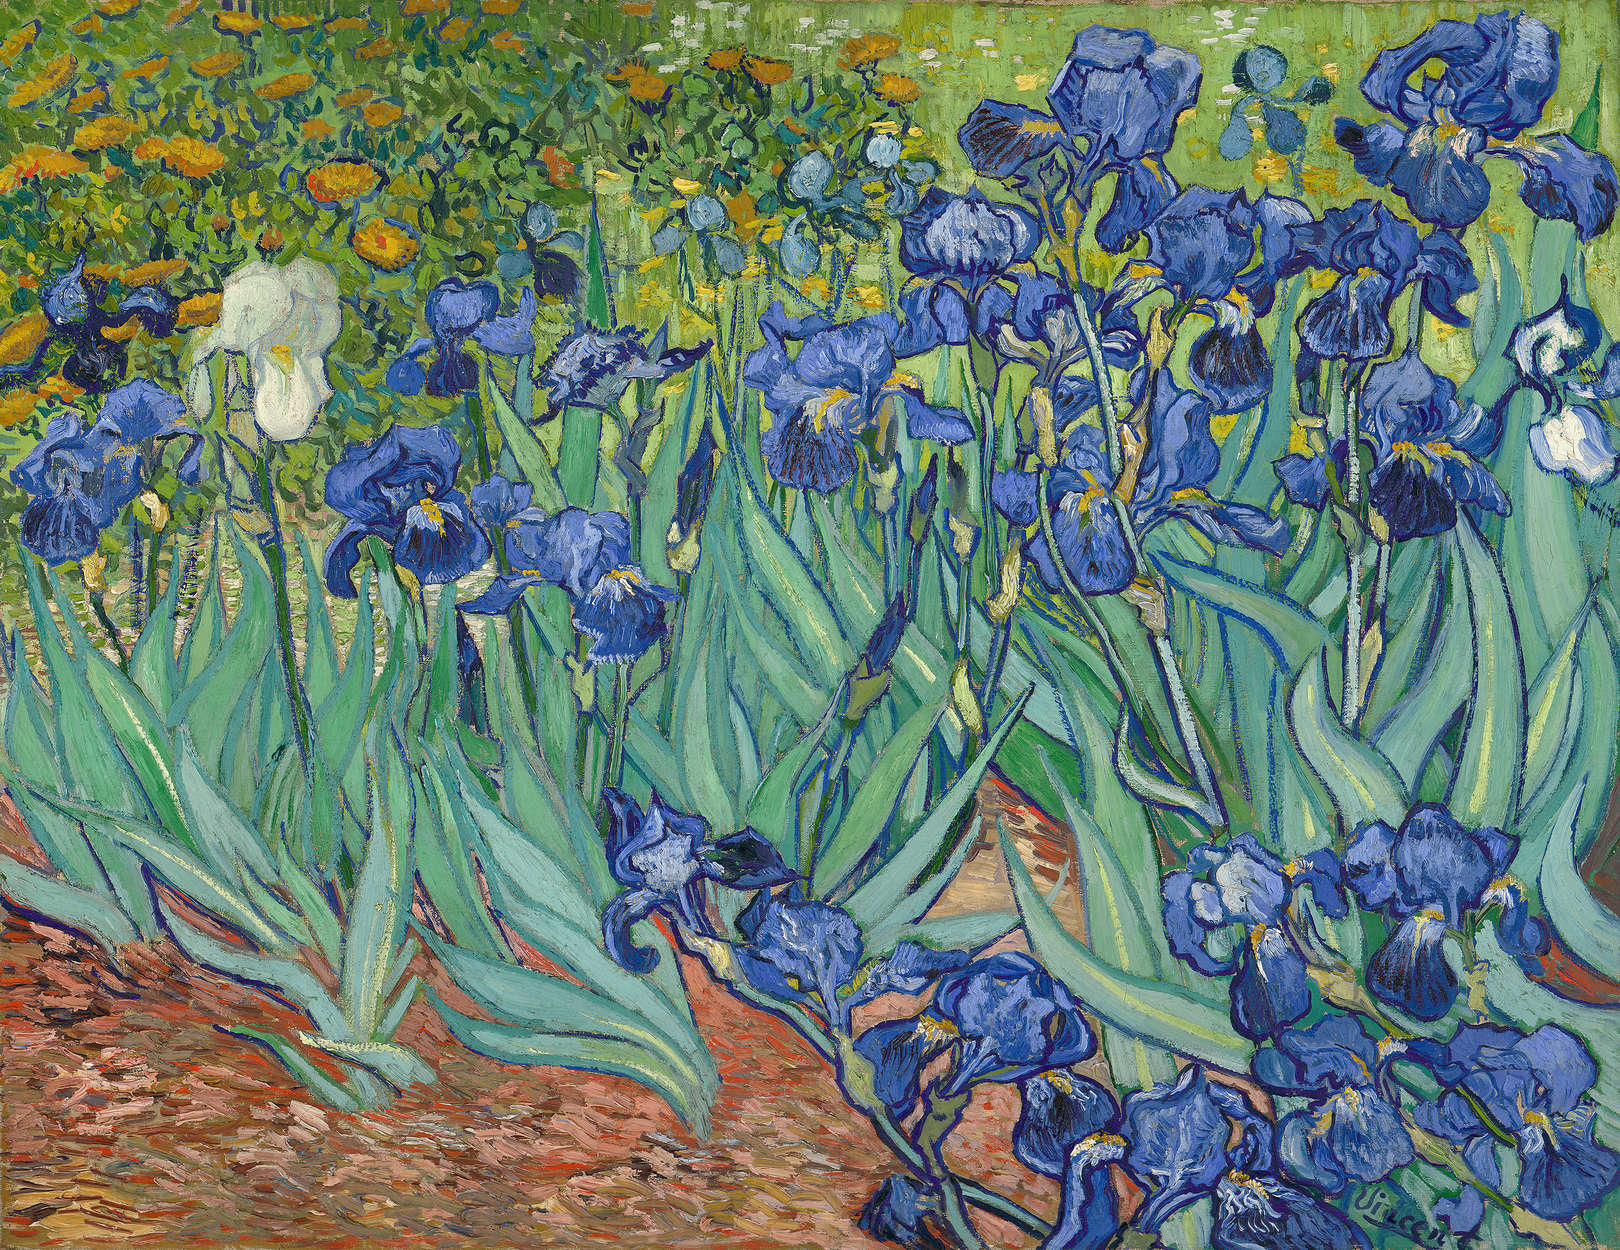             Irises" mural from Vincent van Gogh
        